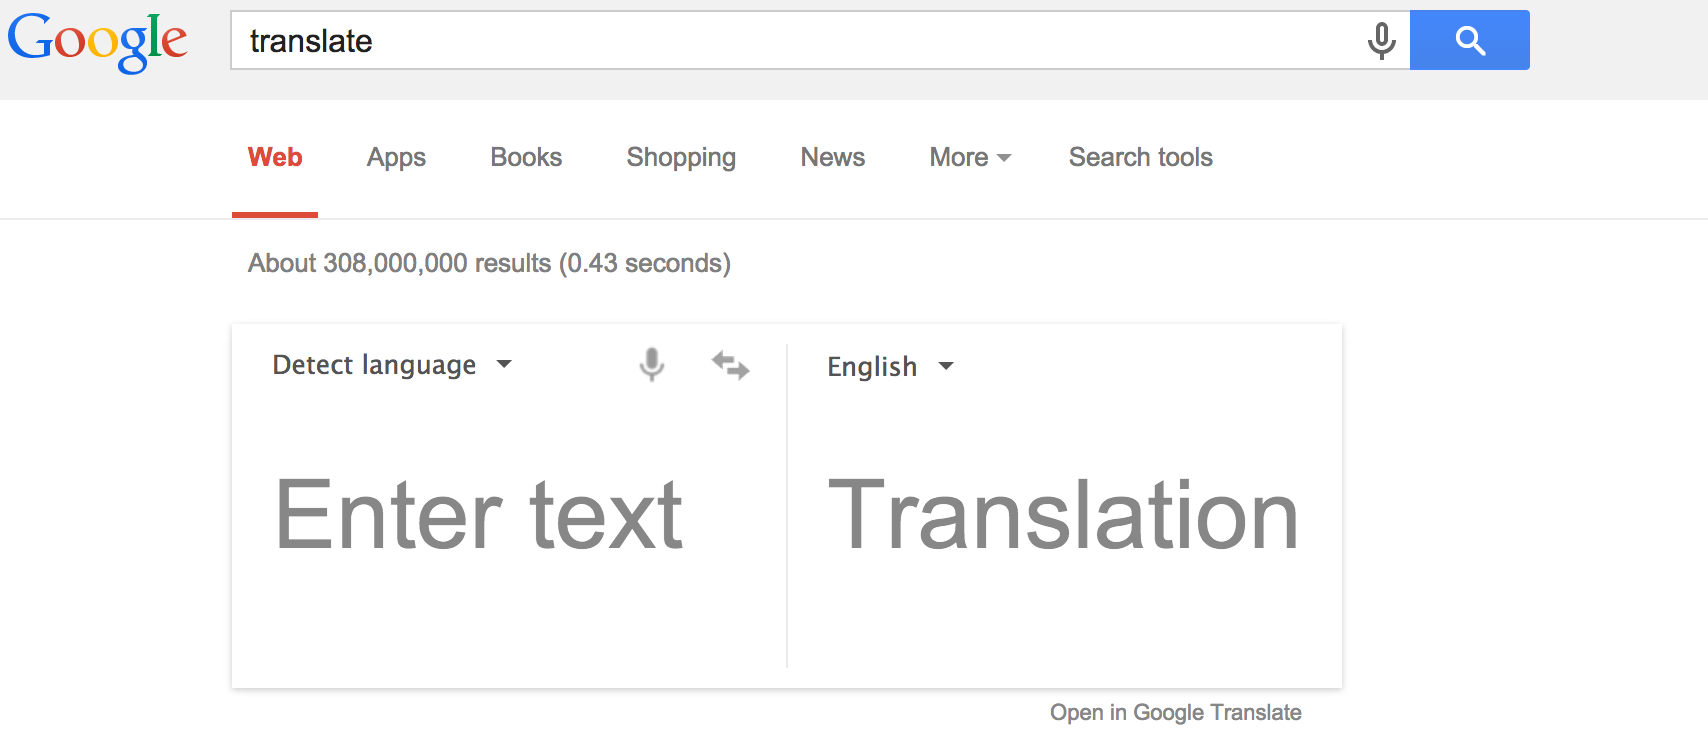 google translate image online